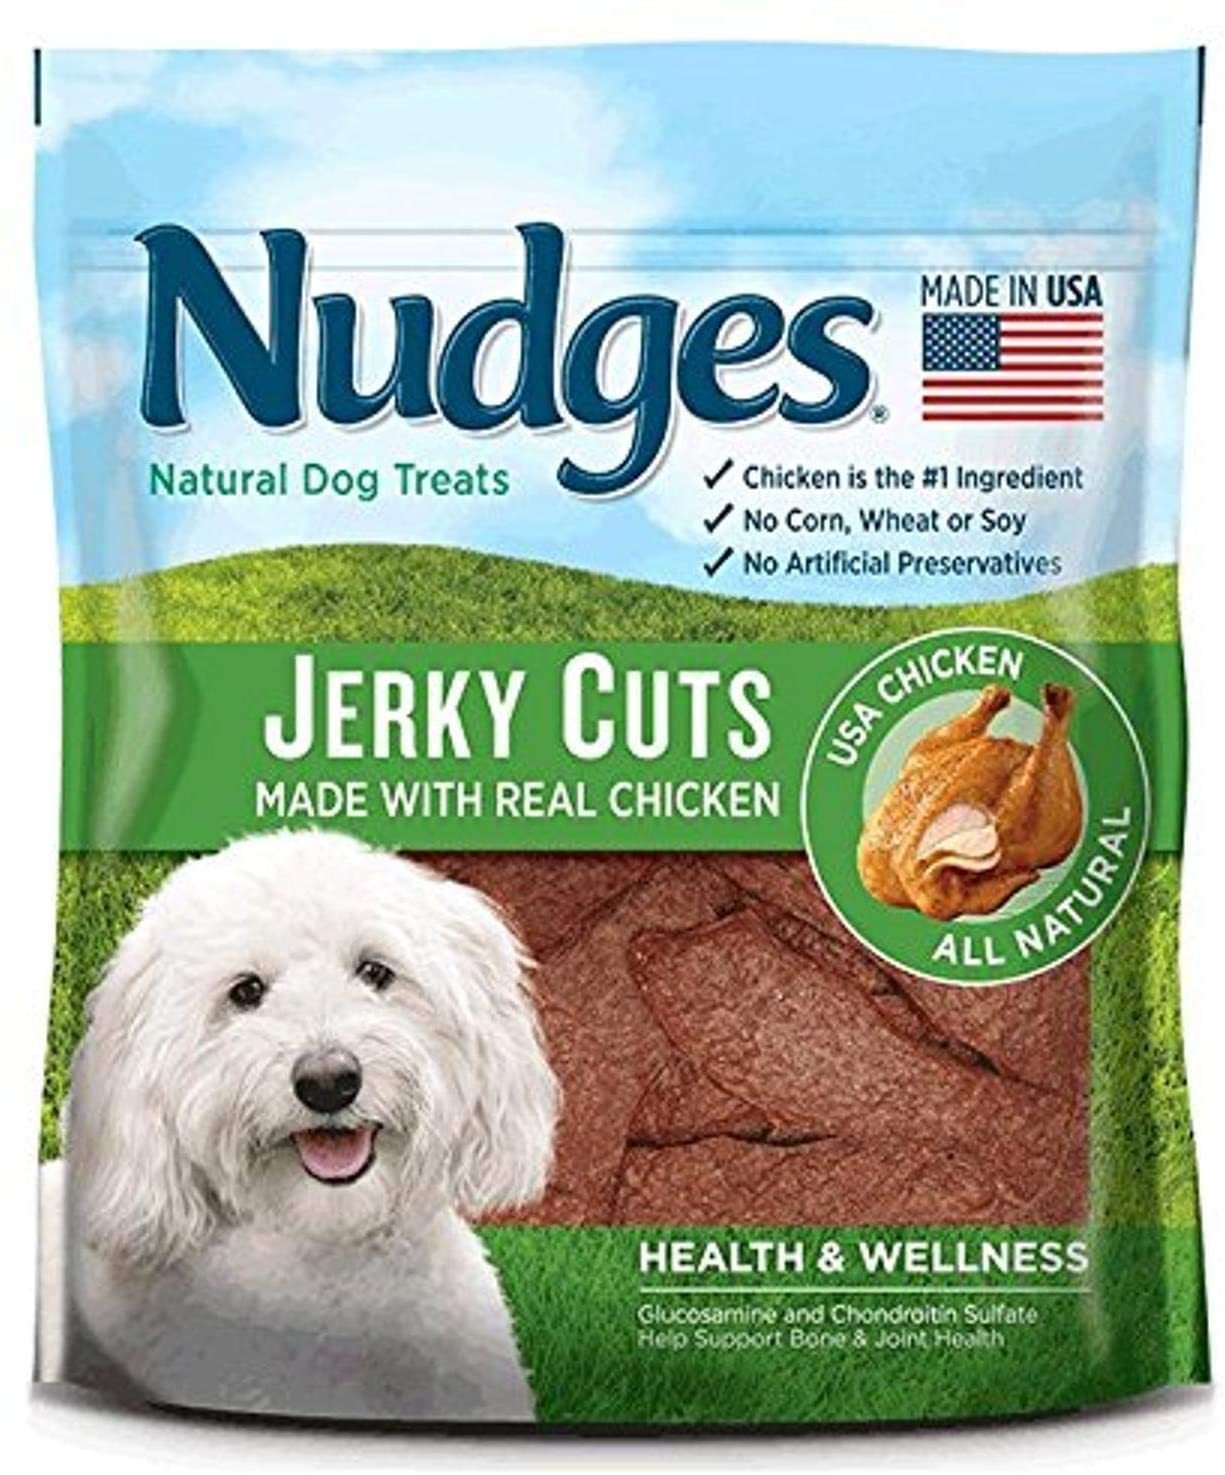 Nudges Natural Dog Treats